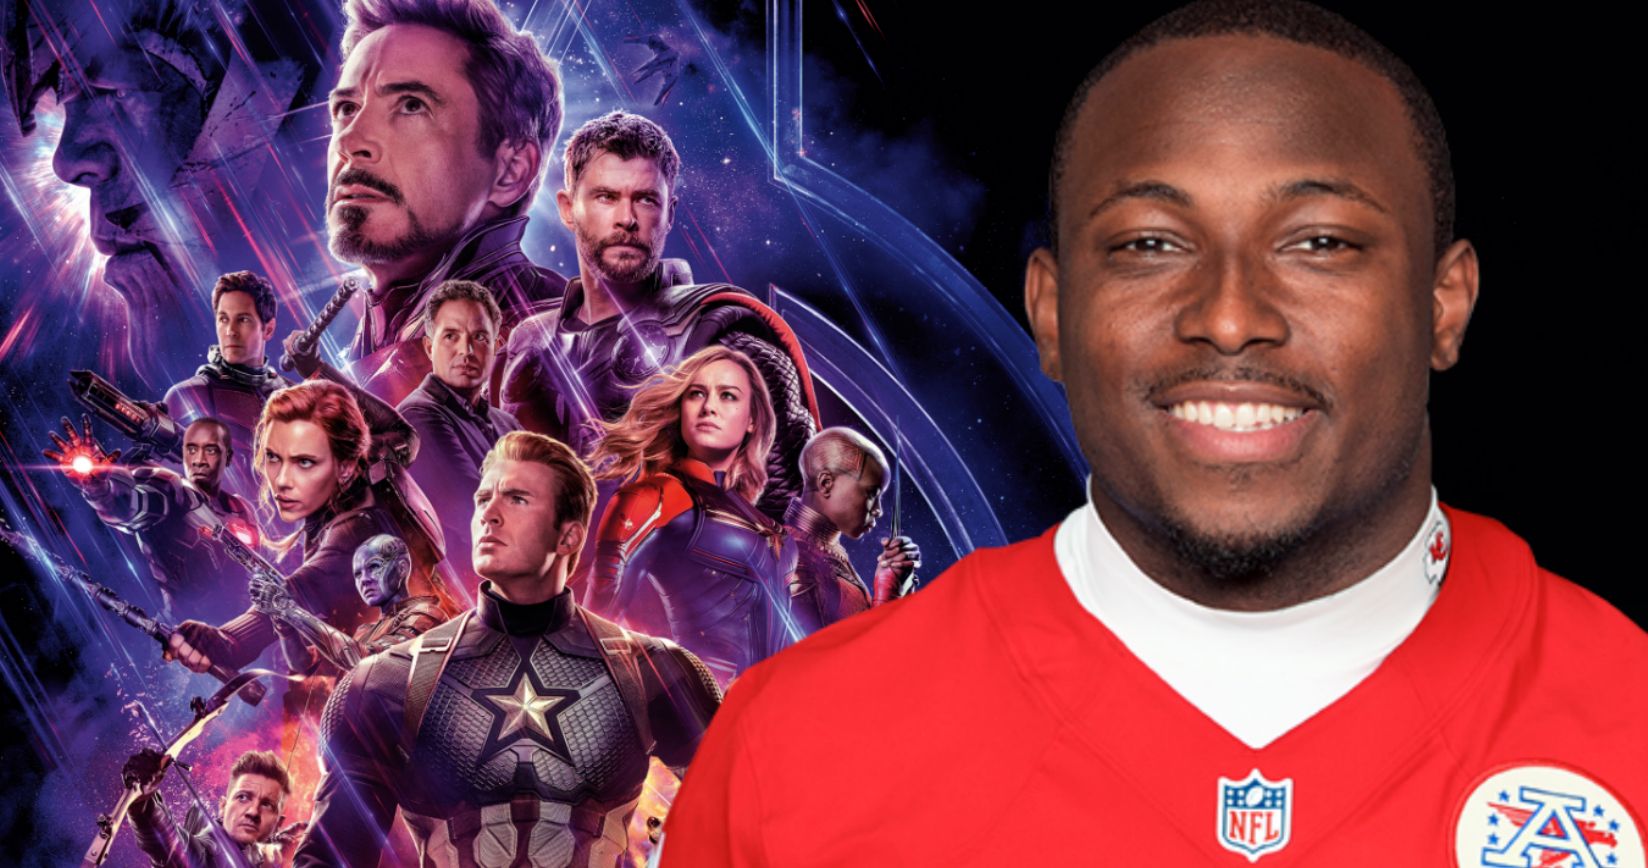 NFL Star LeSean McCoy Regrets Spoiling Tony Stark's Death in Avengers: Endgame